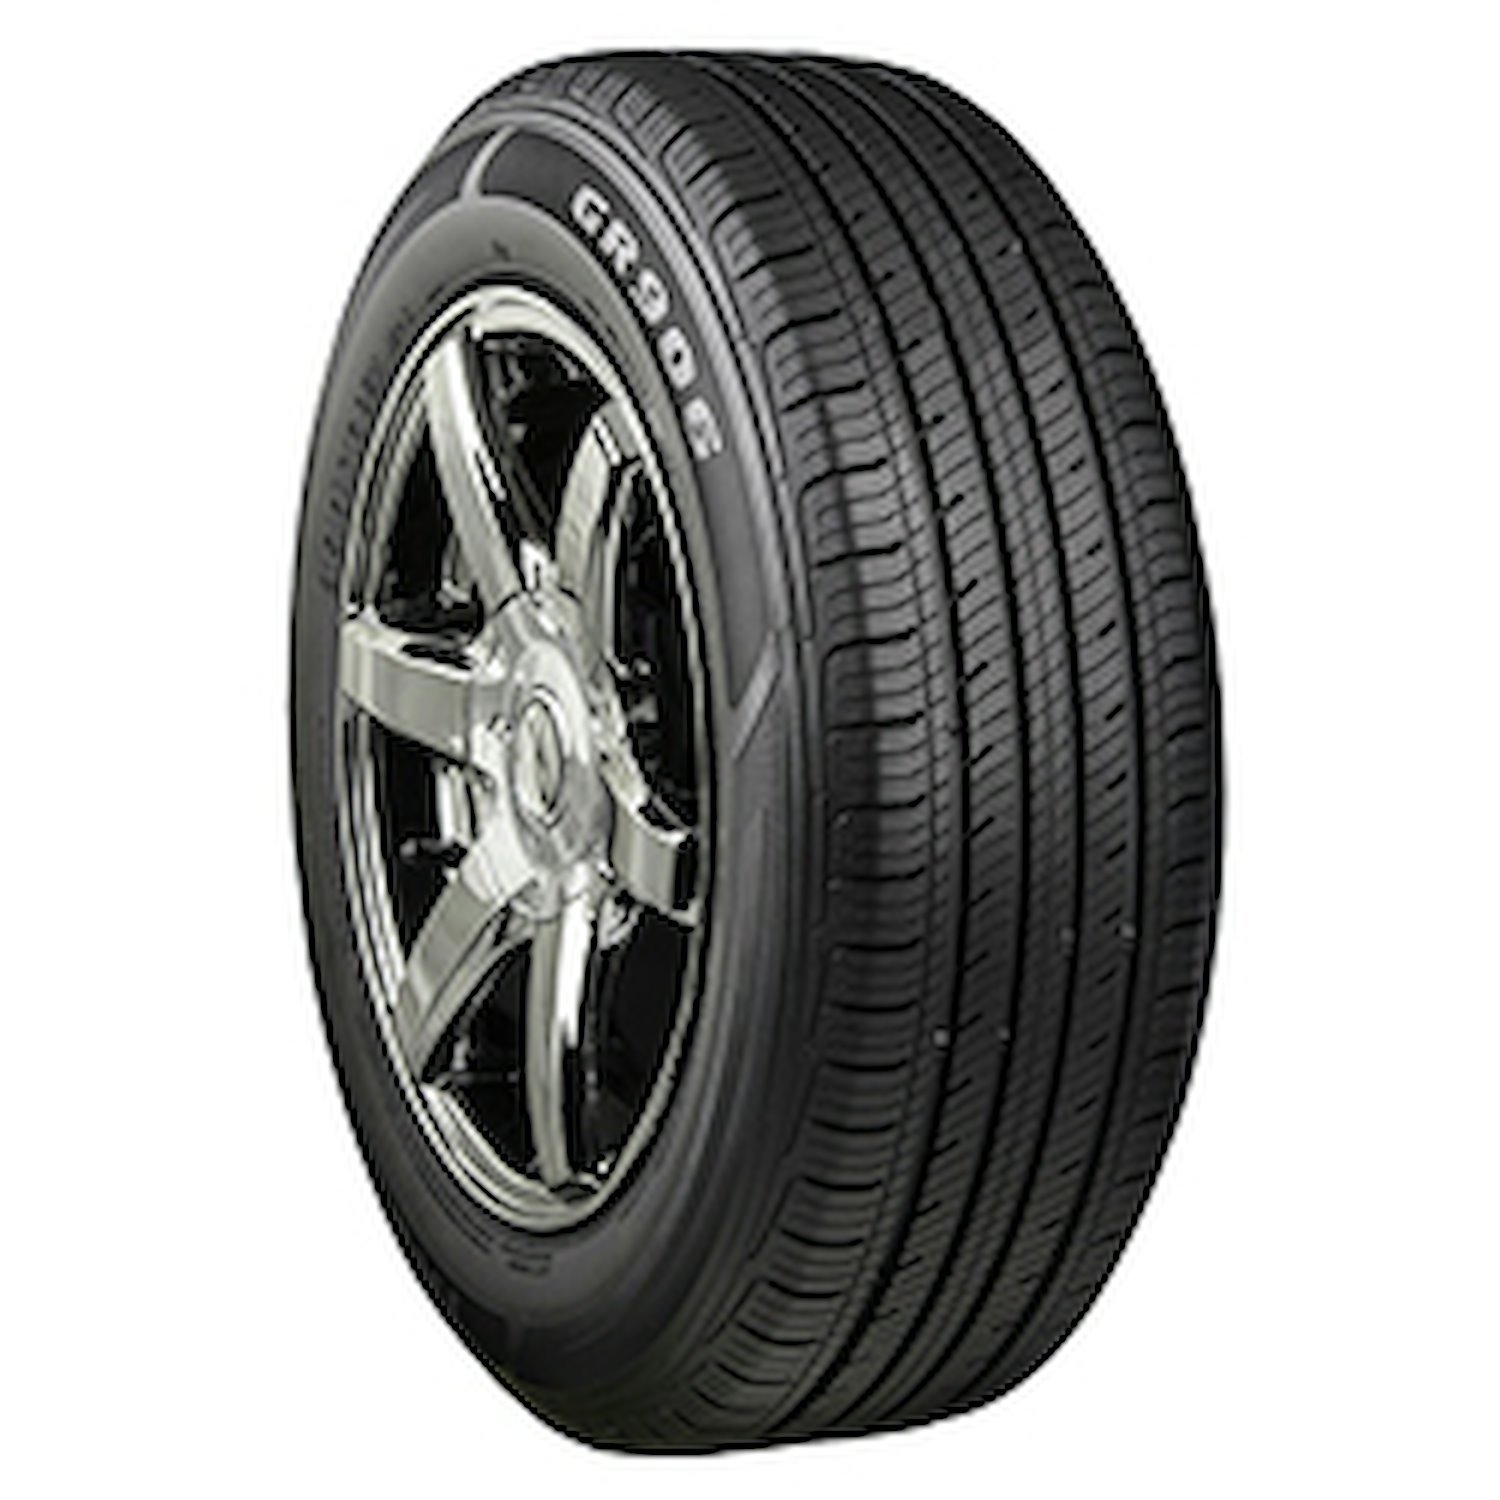 GR906 Tire, 225/60R16 98H